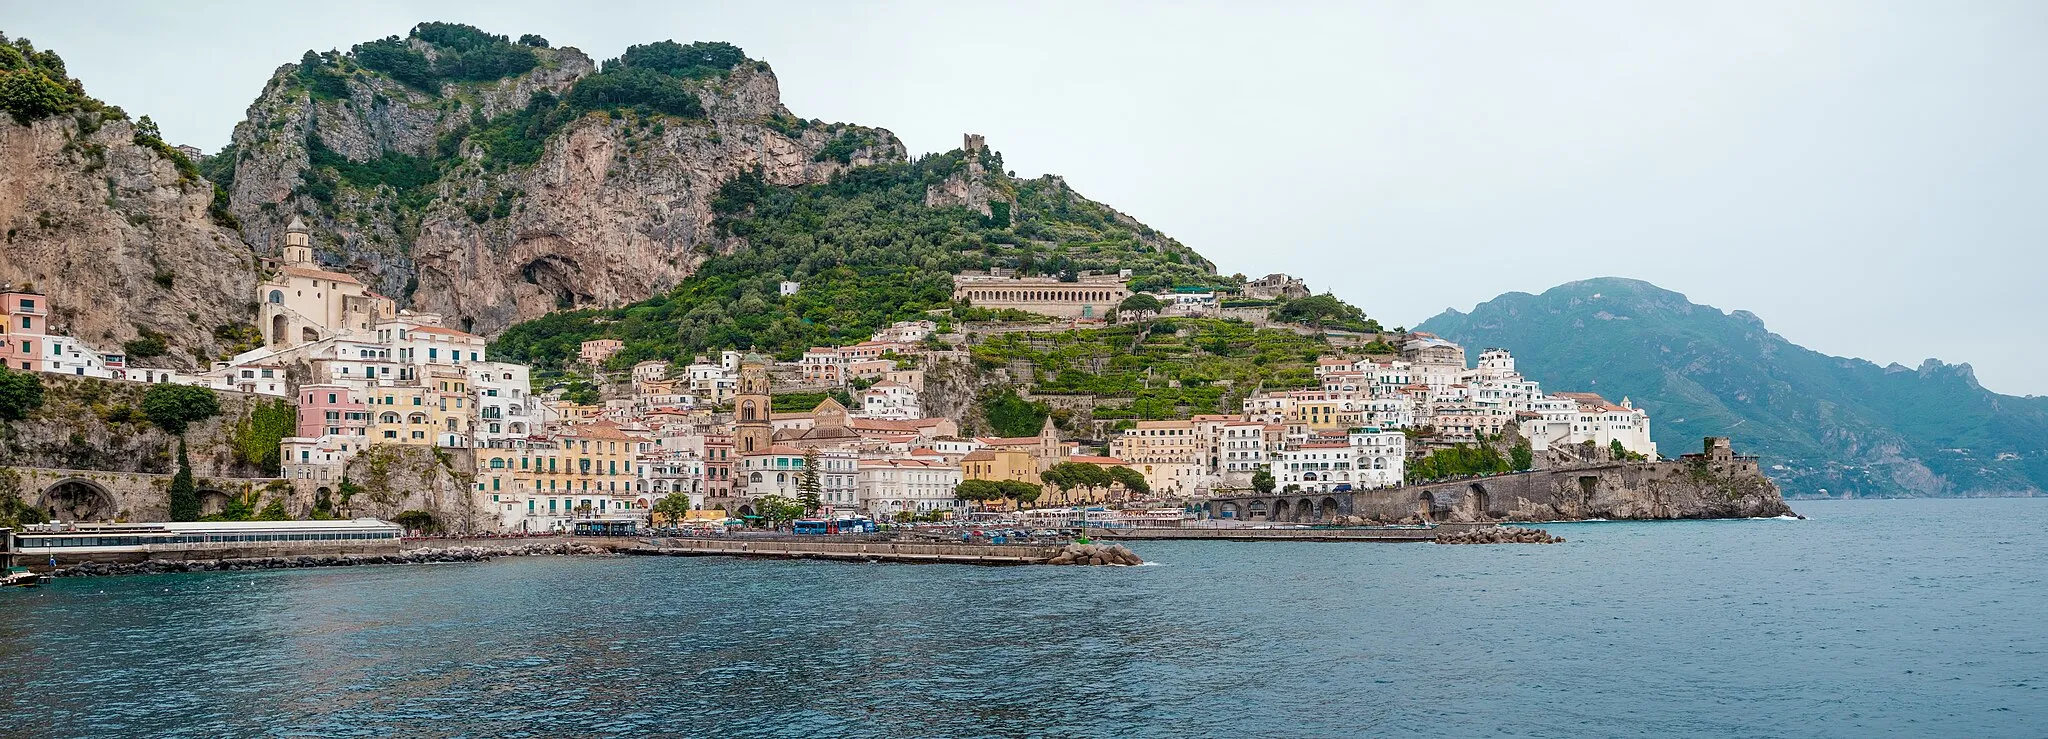 Image of Amalfi